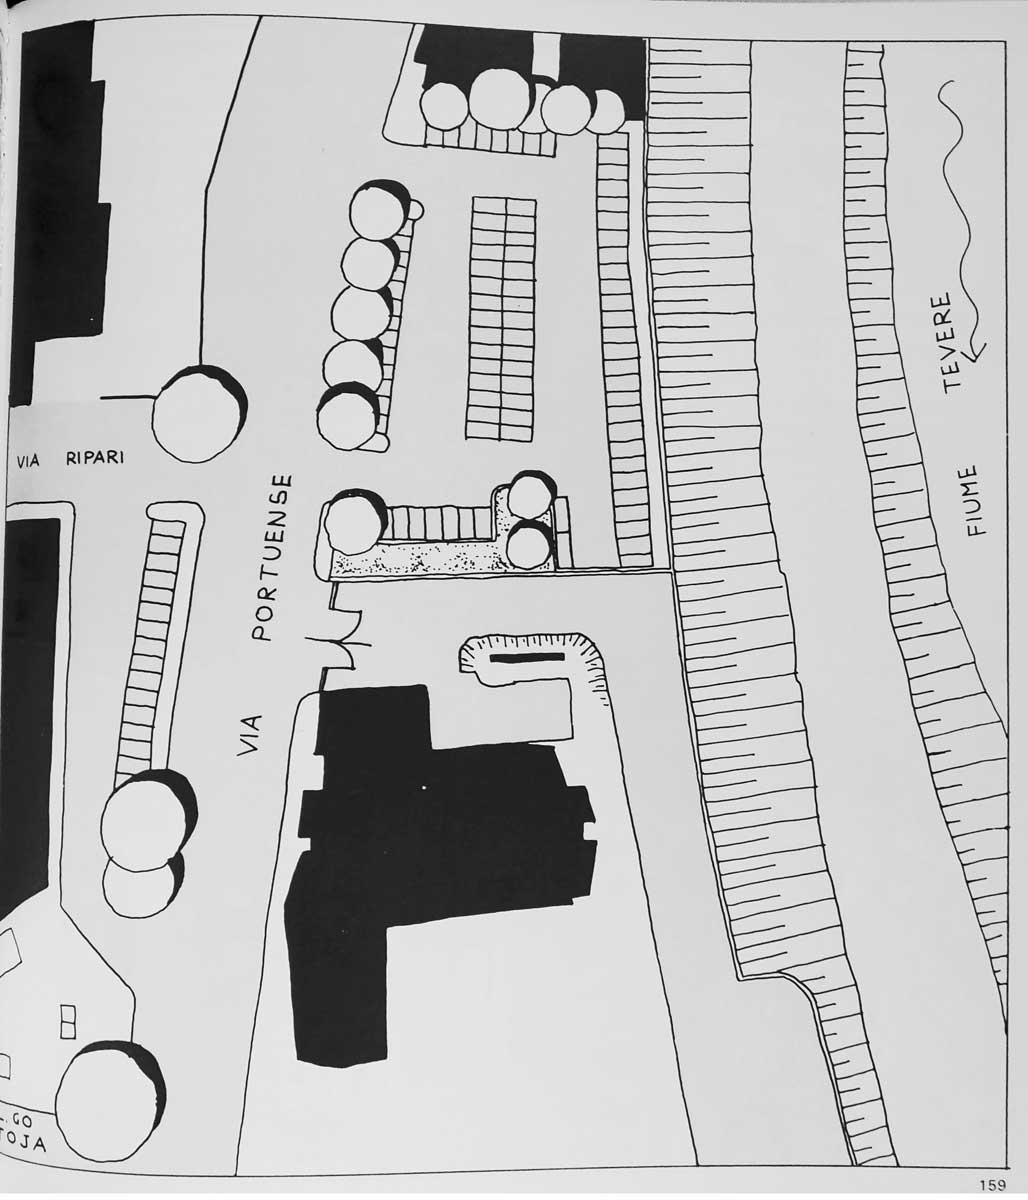 9 - Interventi per i parcheggi e le aree di scambio, collana di documentazione della Ripartizione XIV - Mobilità e traffico del Comune di Roma, 1985 - Tavola interna